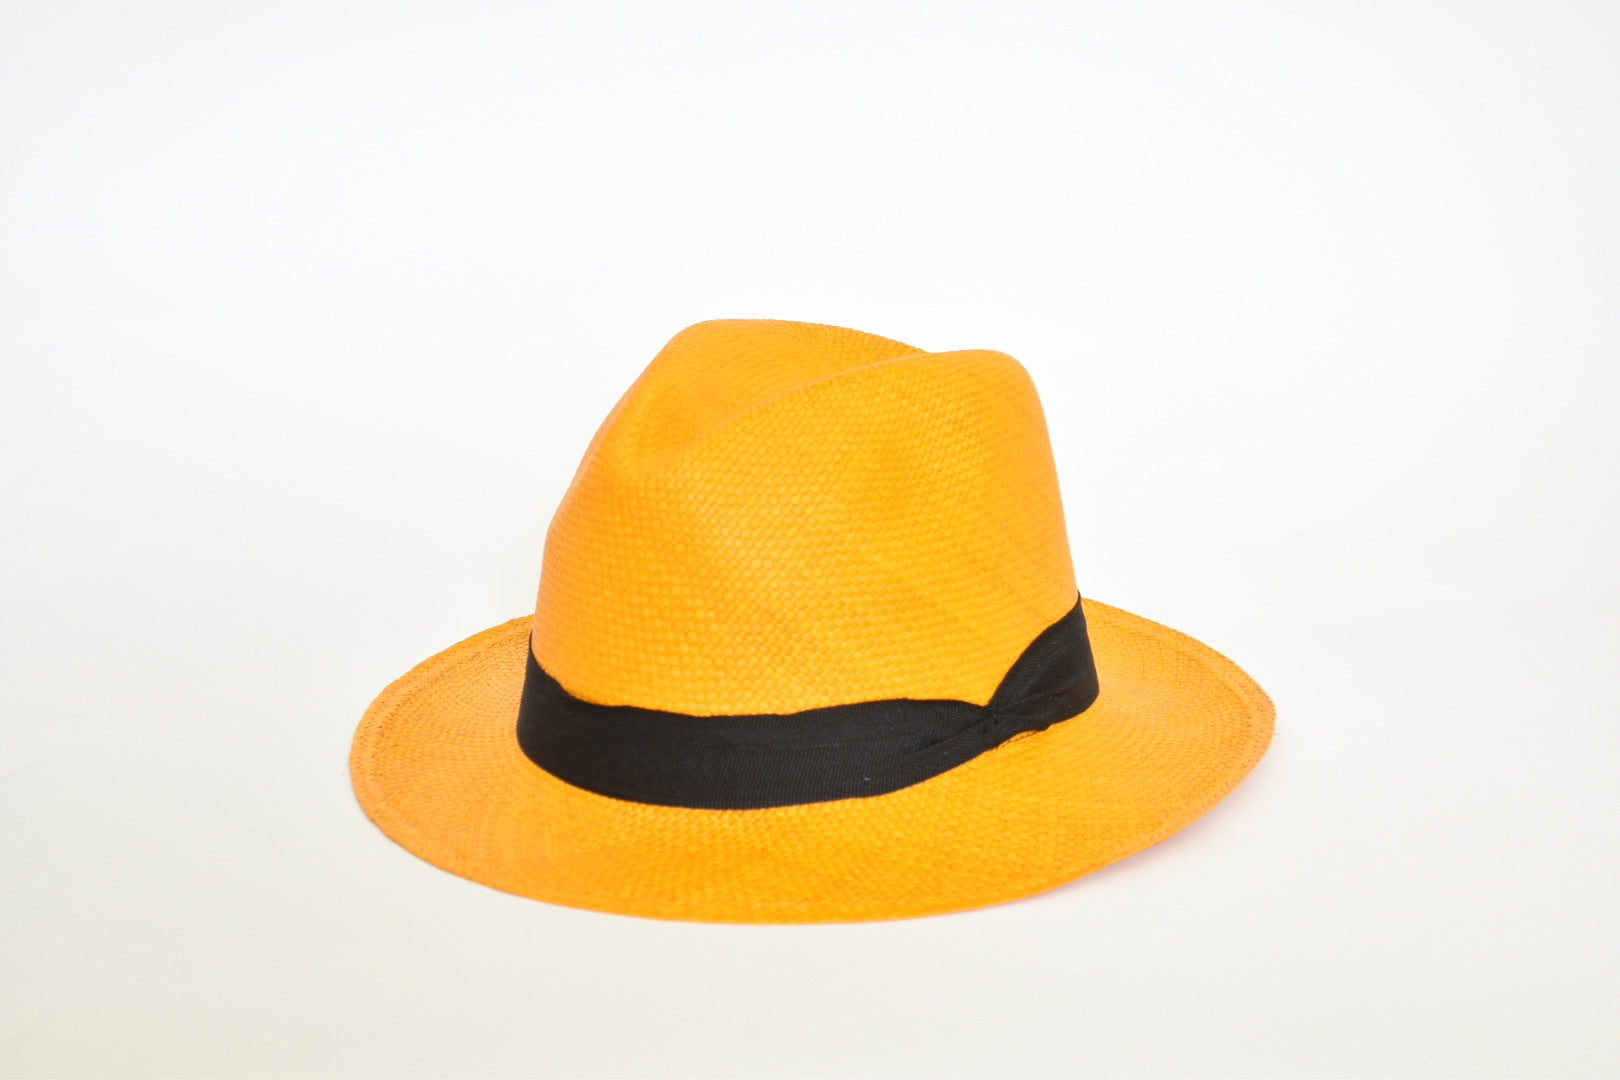 Beach Hat - Fedora Hat